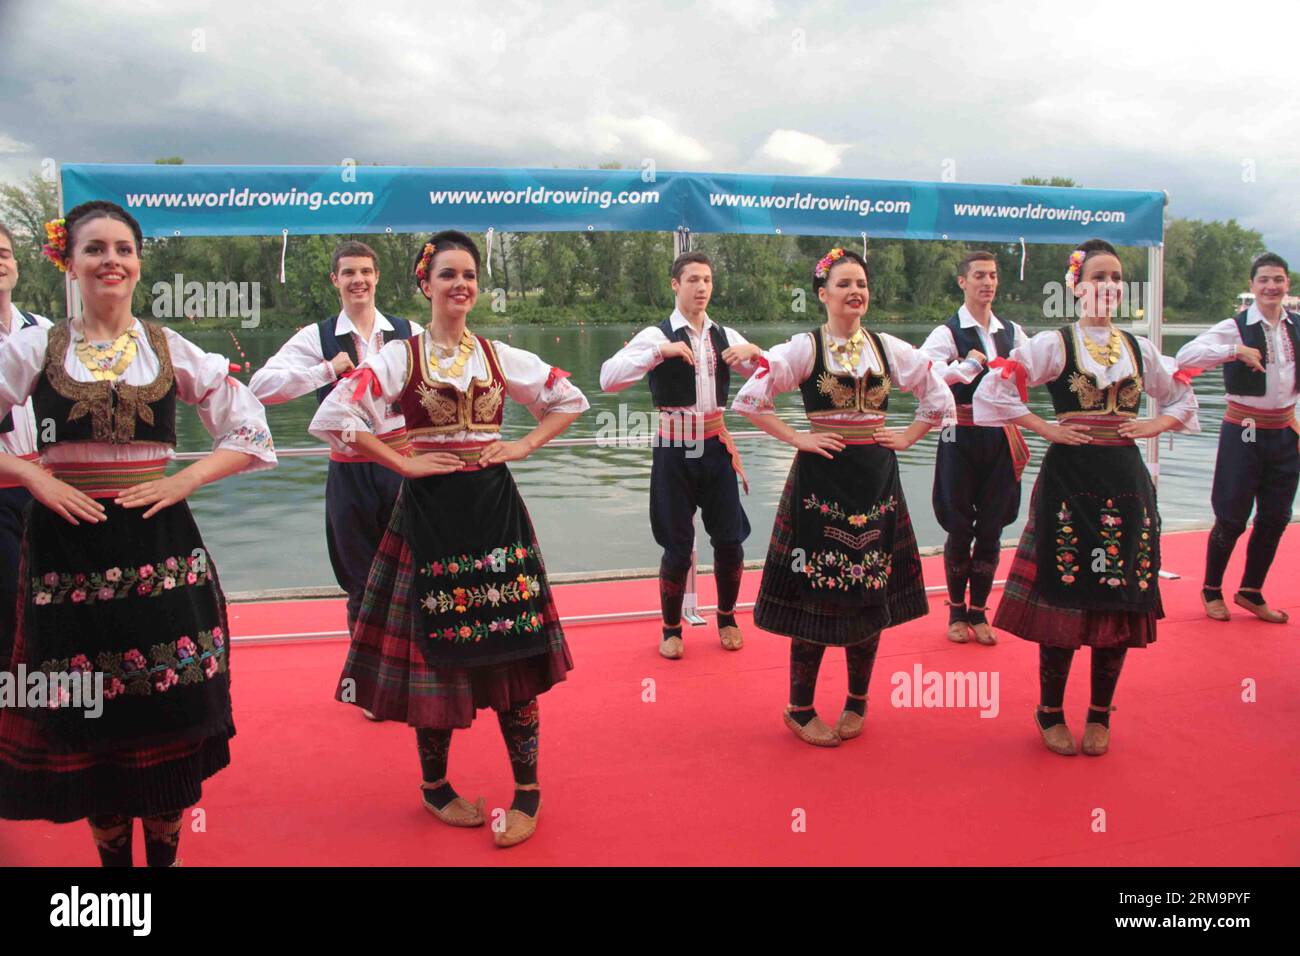 BELGRAD, (Xinhua) – Tänzerinnen und Tänzer führen serbischen Volkstanz bei der Eröffnungszeremonie der Europameisterschaften im Rudern 2014 am Ada-Ciganlija-See in Belgrad am 29. Mai 2014 auf. Die Rudereuropameisterschaften finden vom 30. Mai bis 1. Juni statt. (Xinhua/Wang Hui) (SP)SERBIEN-BELGRAD-EUROPAMEISTERSCHAFTEN im RUDERSPORT PUBLICATIONxNOTxINxCHN Belgrade XINHUA Tänzerinnen führen serbischen Volkstanz BEI der Eröffnungszeremonie der Europameisterschaften 2014 AM Ada-Ciganlija-See in Belgrad AM 29 2014. Mai AUF. die Europameisterschaften werden vom 30. Mai bis 1. Juni Held XINHUA Wang Hui SP Serbien Belgrad sein Stockfoto